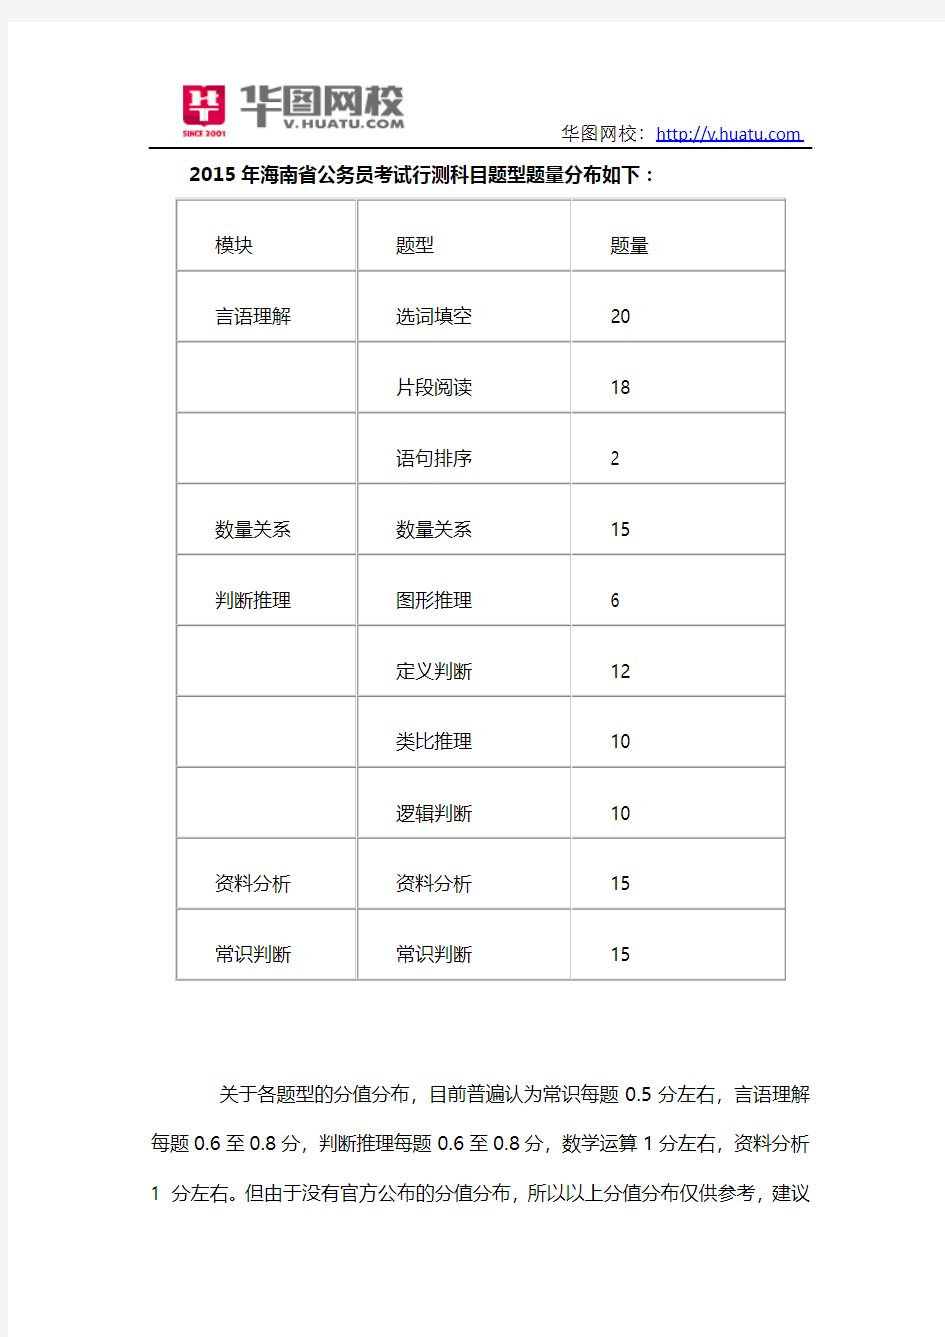 2015海南省公务员考试行测分值分布